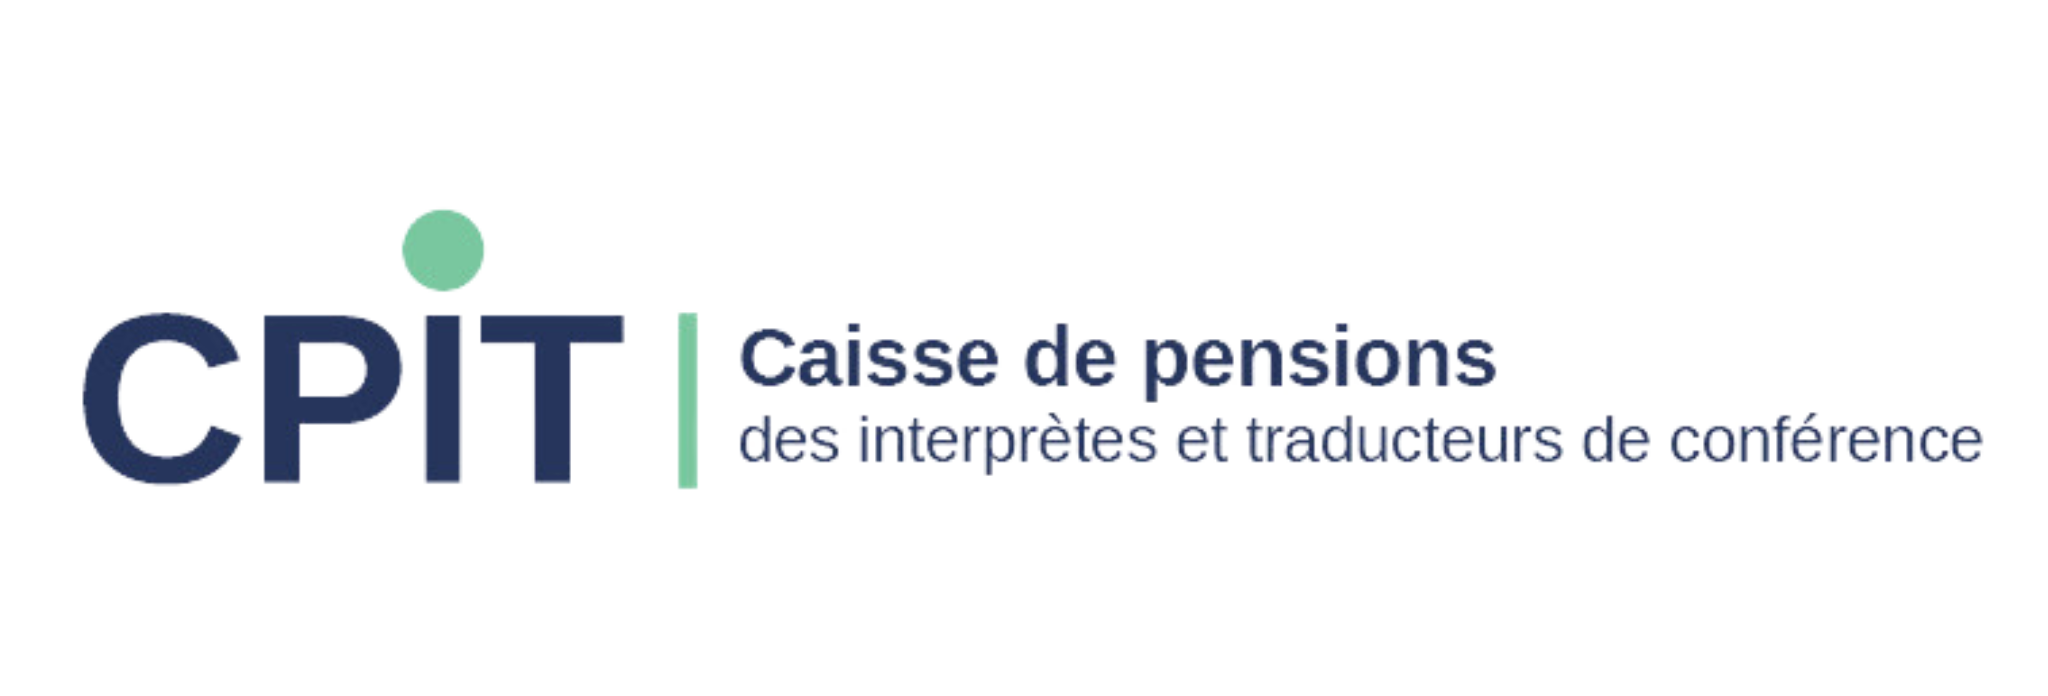 Logo Caisse de pensions des interprètes et traducteurs de conférence